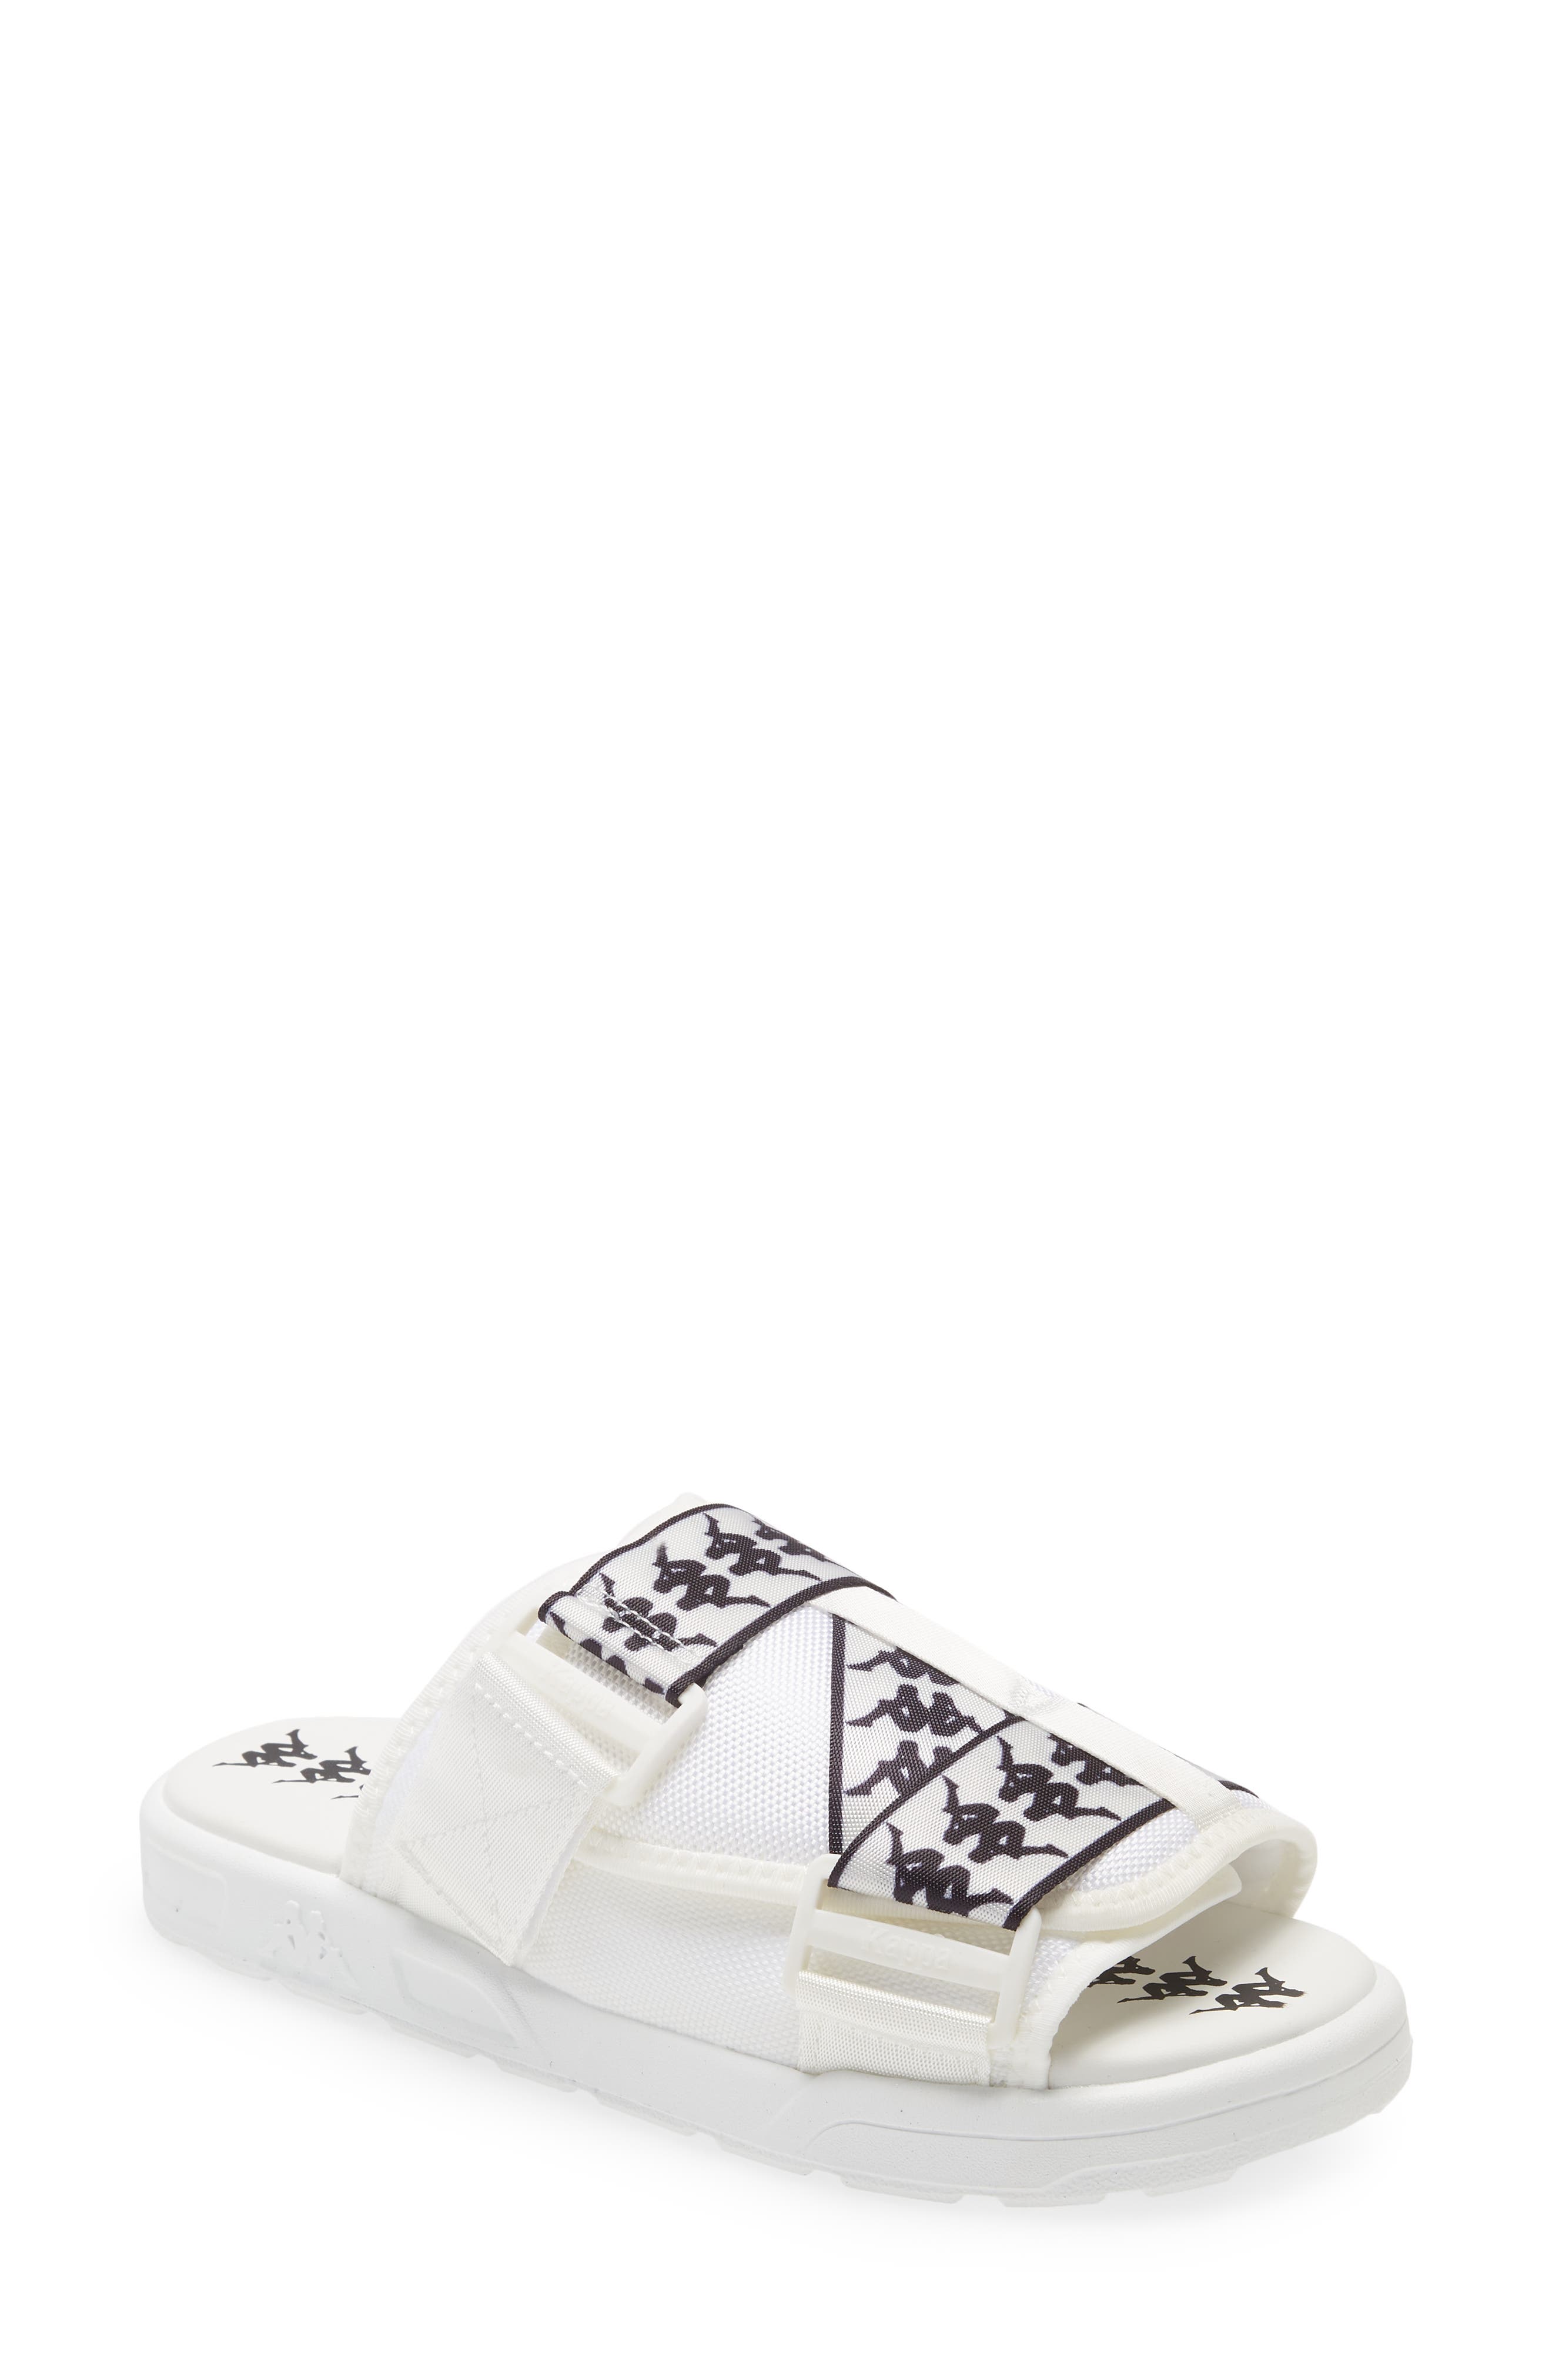 Kappa 222 Banda Mitel Slide Sandal in White/Black at Nordstrom, Size 13